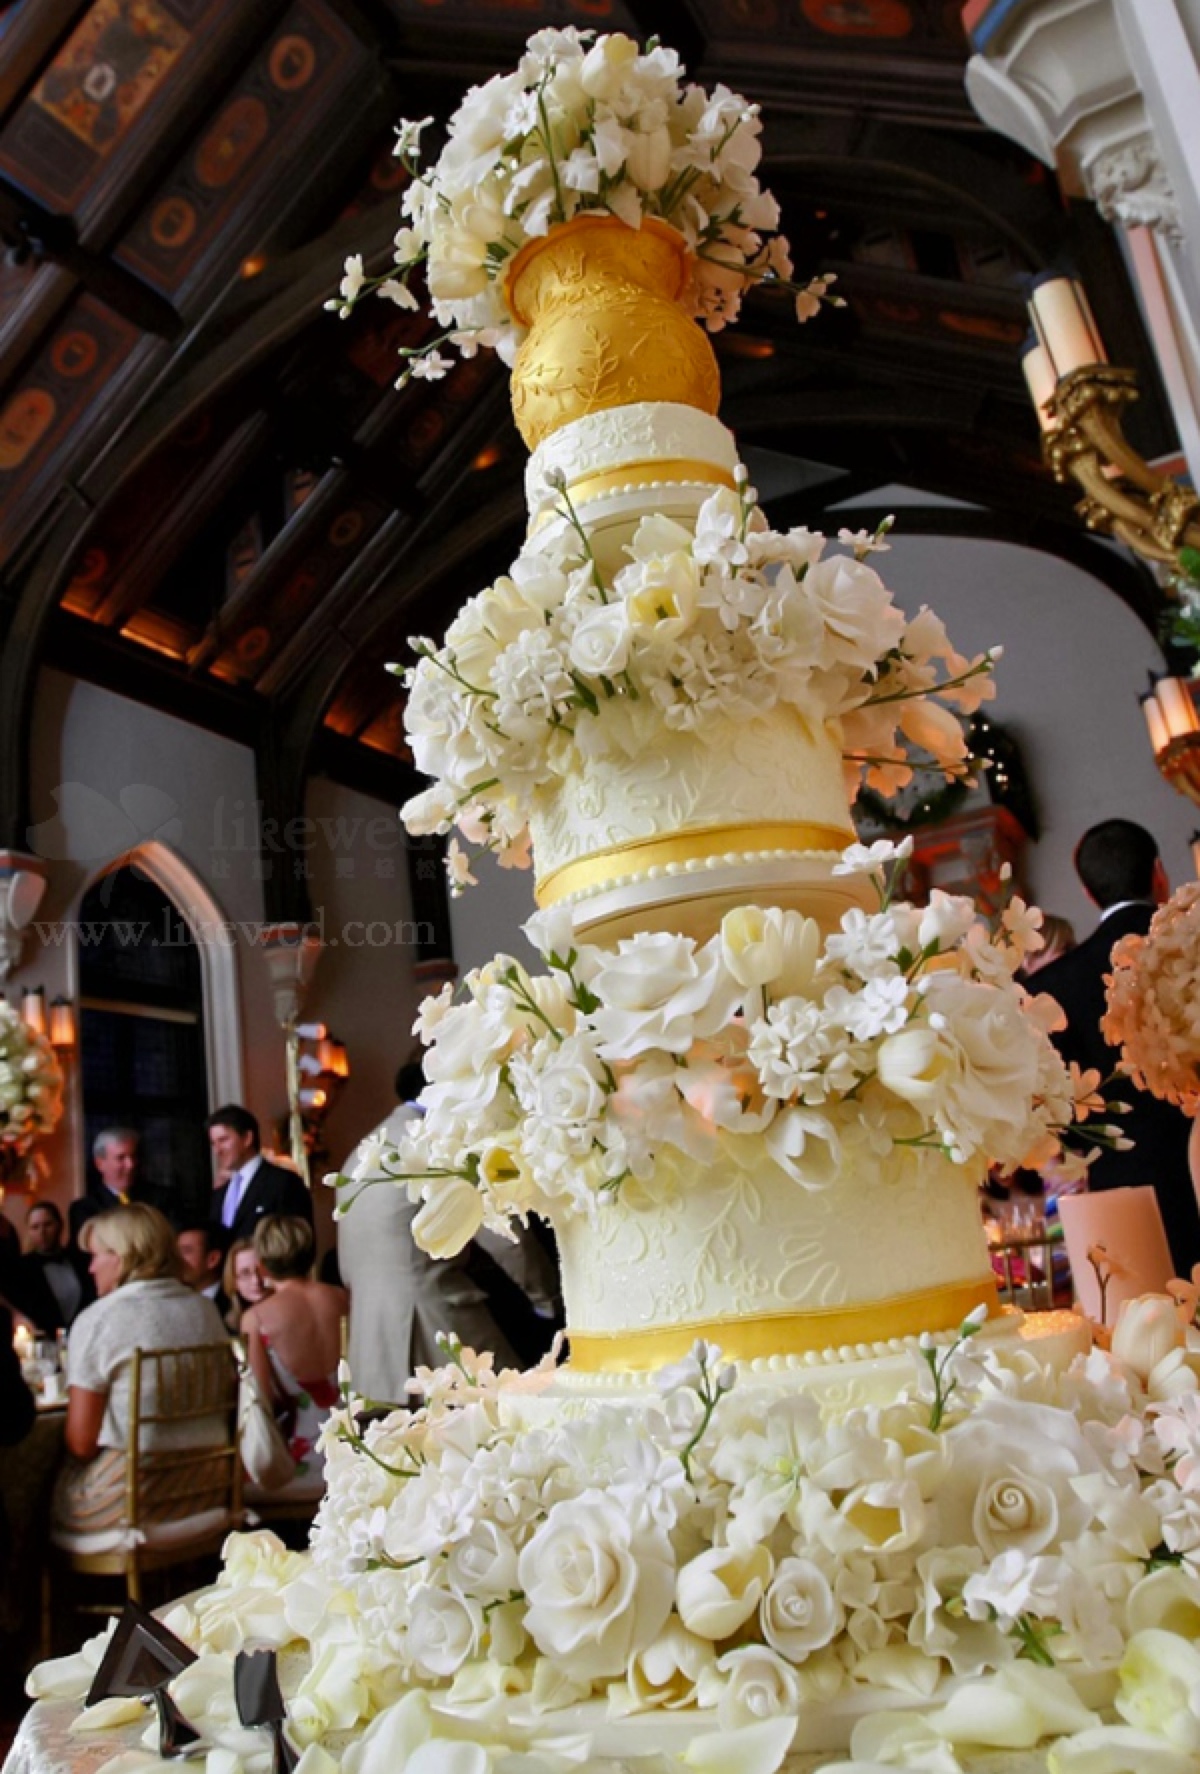 婚礼上的巨无霸,那些华丽丽的多层翻糖婚礼蛋糕!